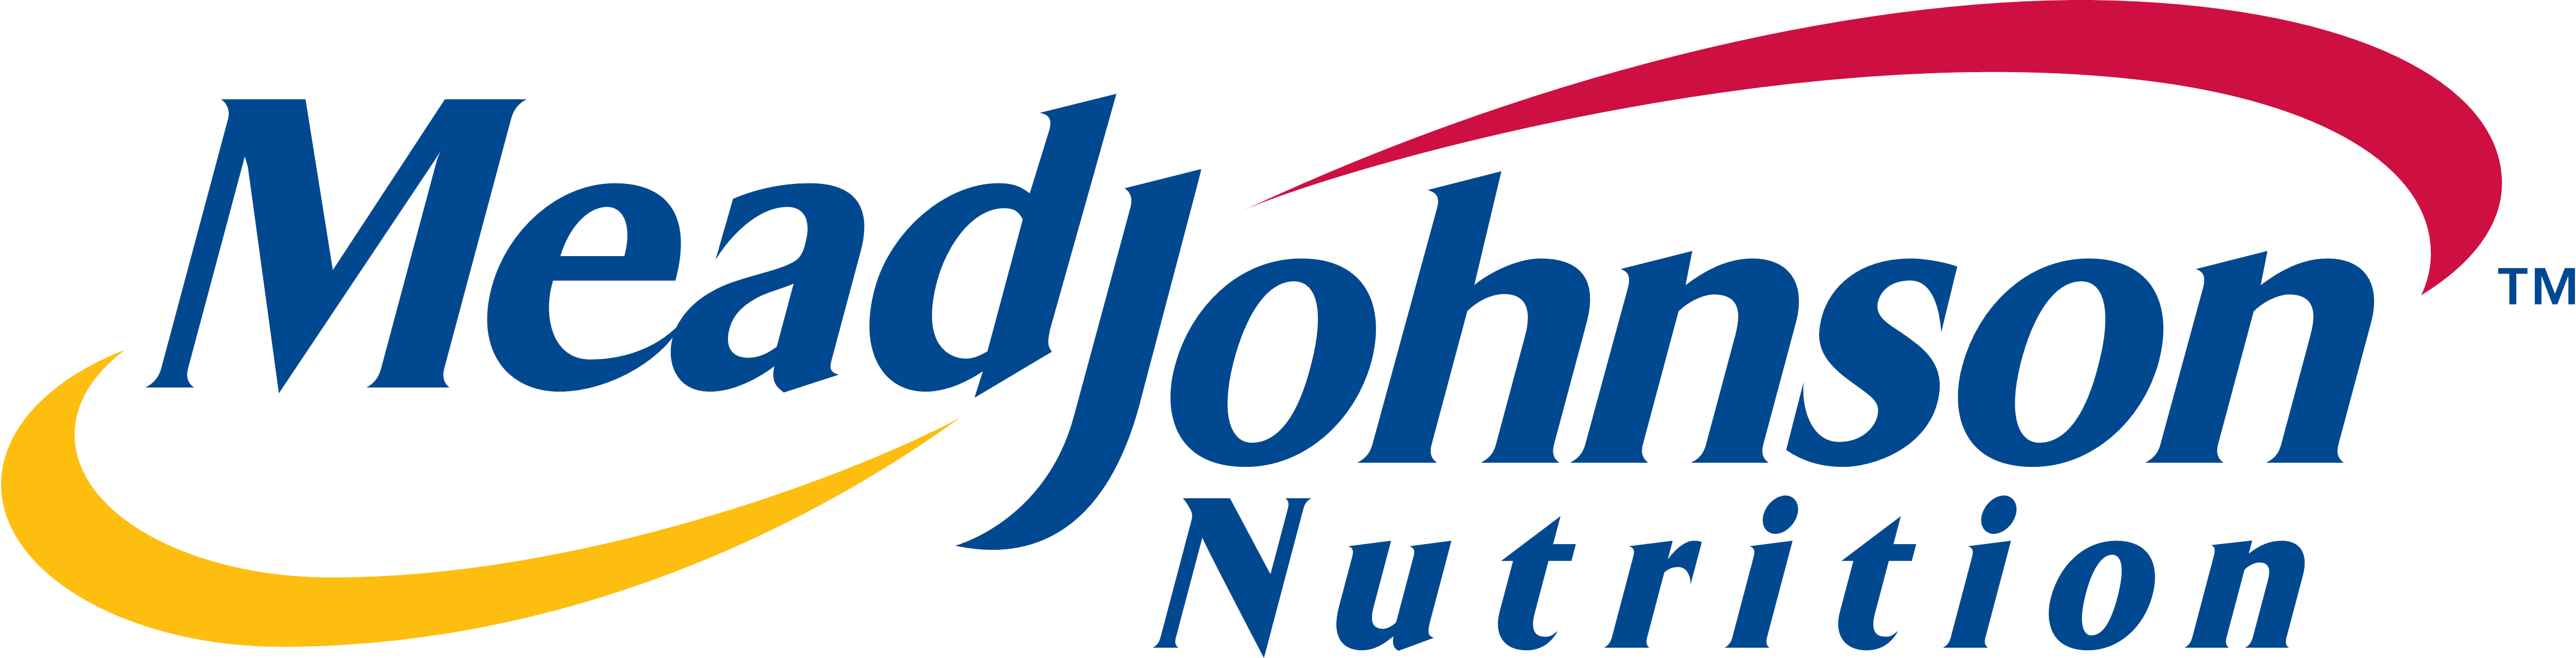 Mead Johnson Nutrition Logos Download Free John Deere - Mead Johnson Nutrition Logos Download Free John Deere (5000x1277)